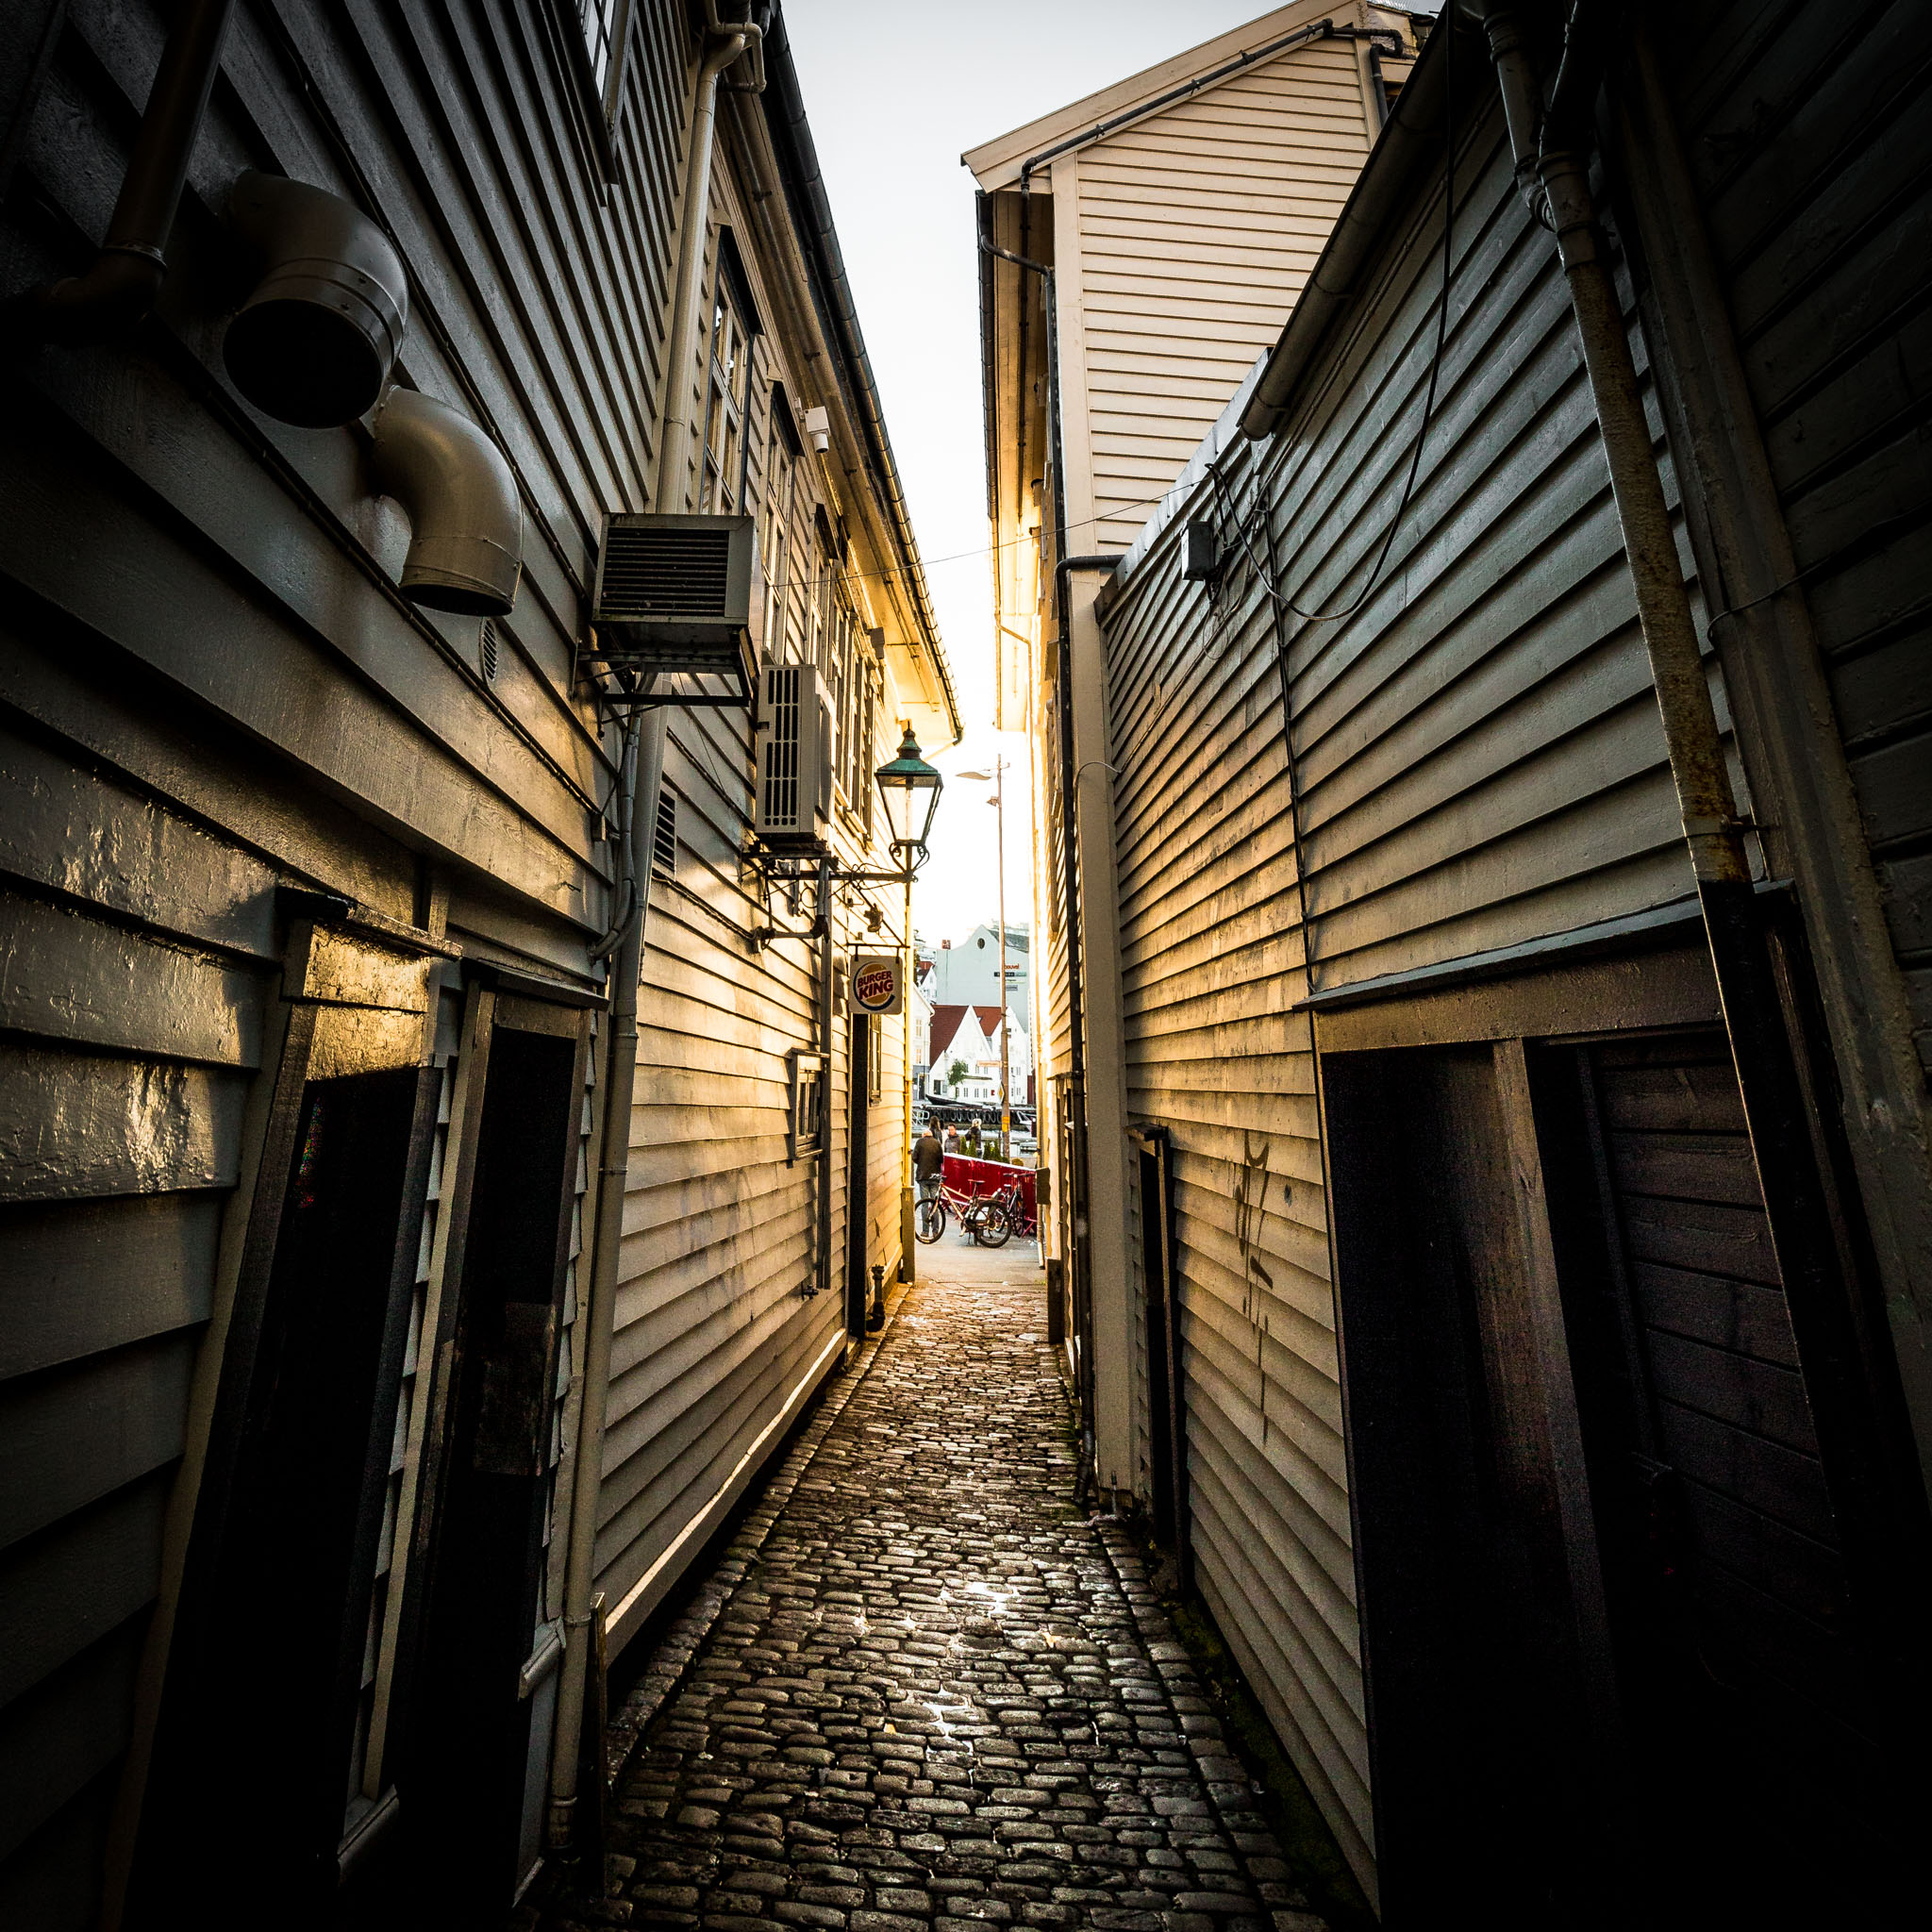 Veggbilder |  | An alley in Stavanger | fotokunst kunstfoto foto kunst bilder aluminiumsplate wall art